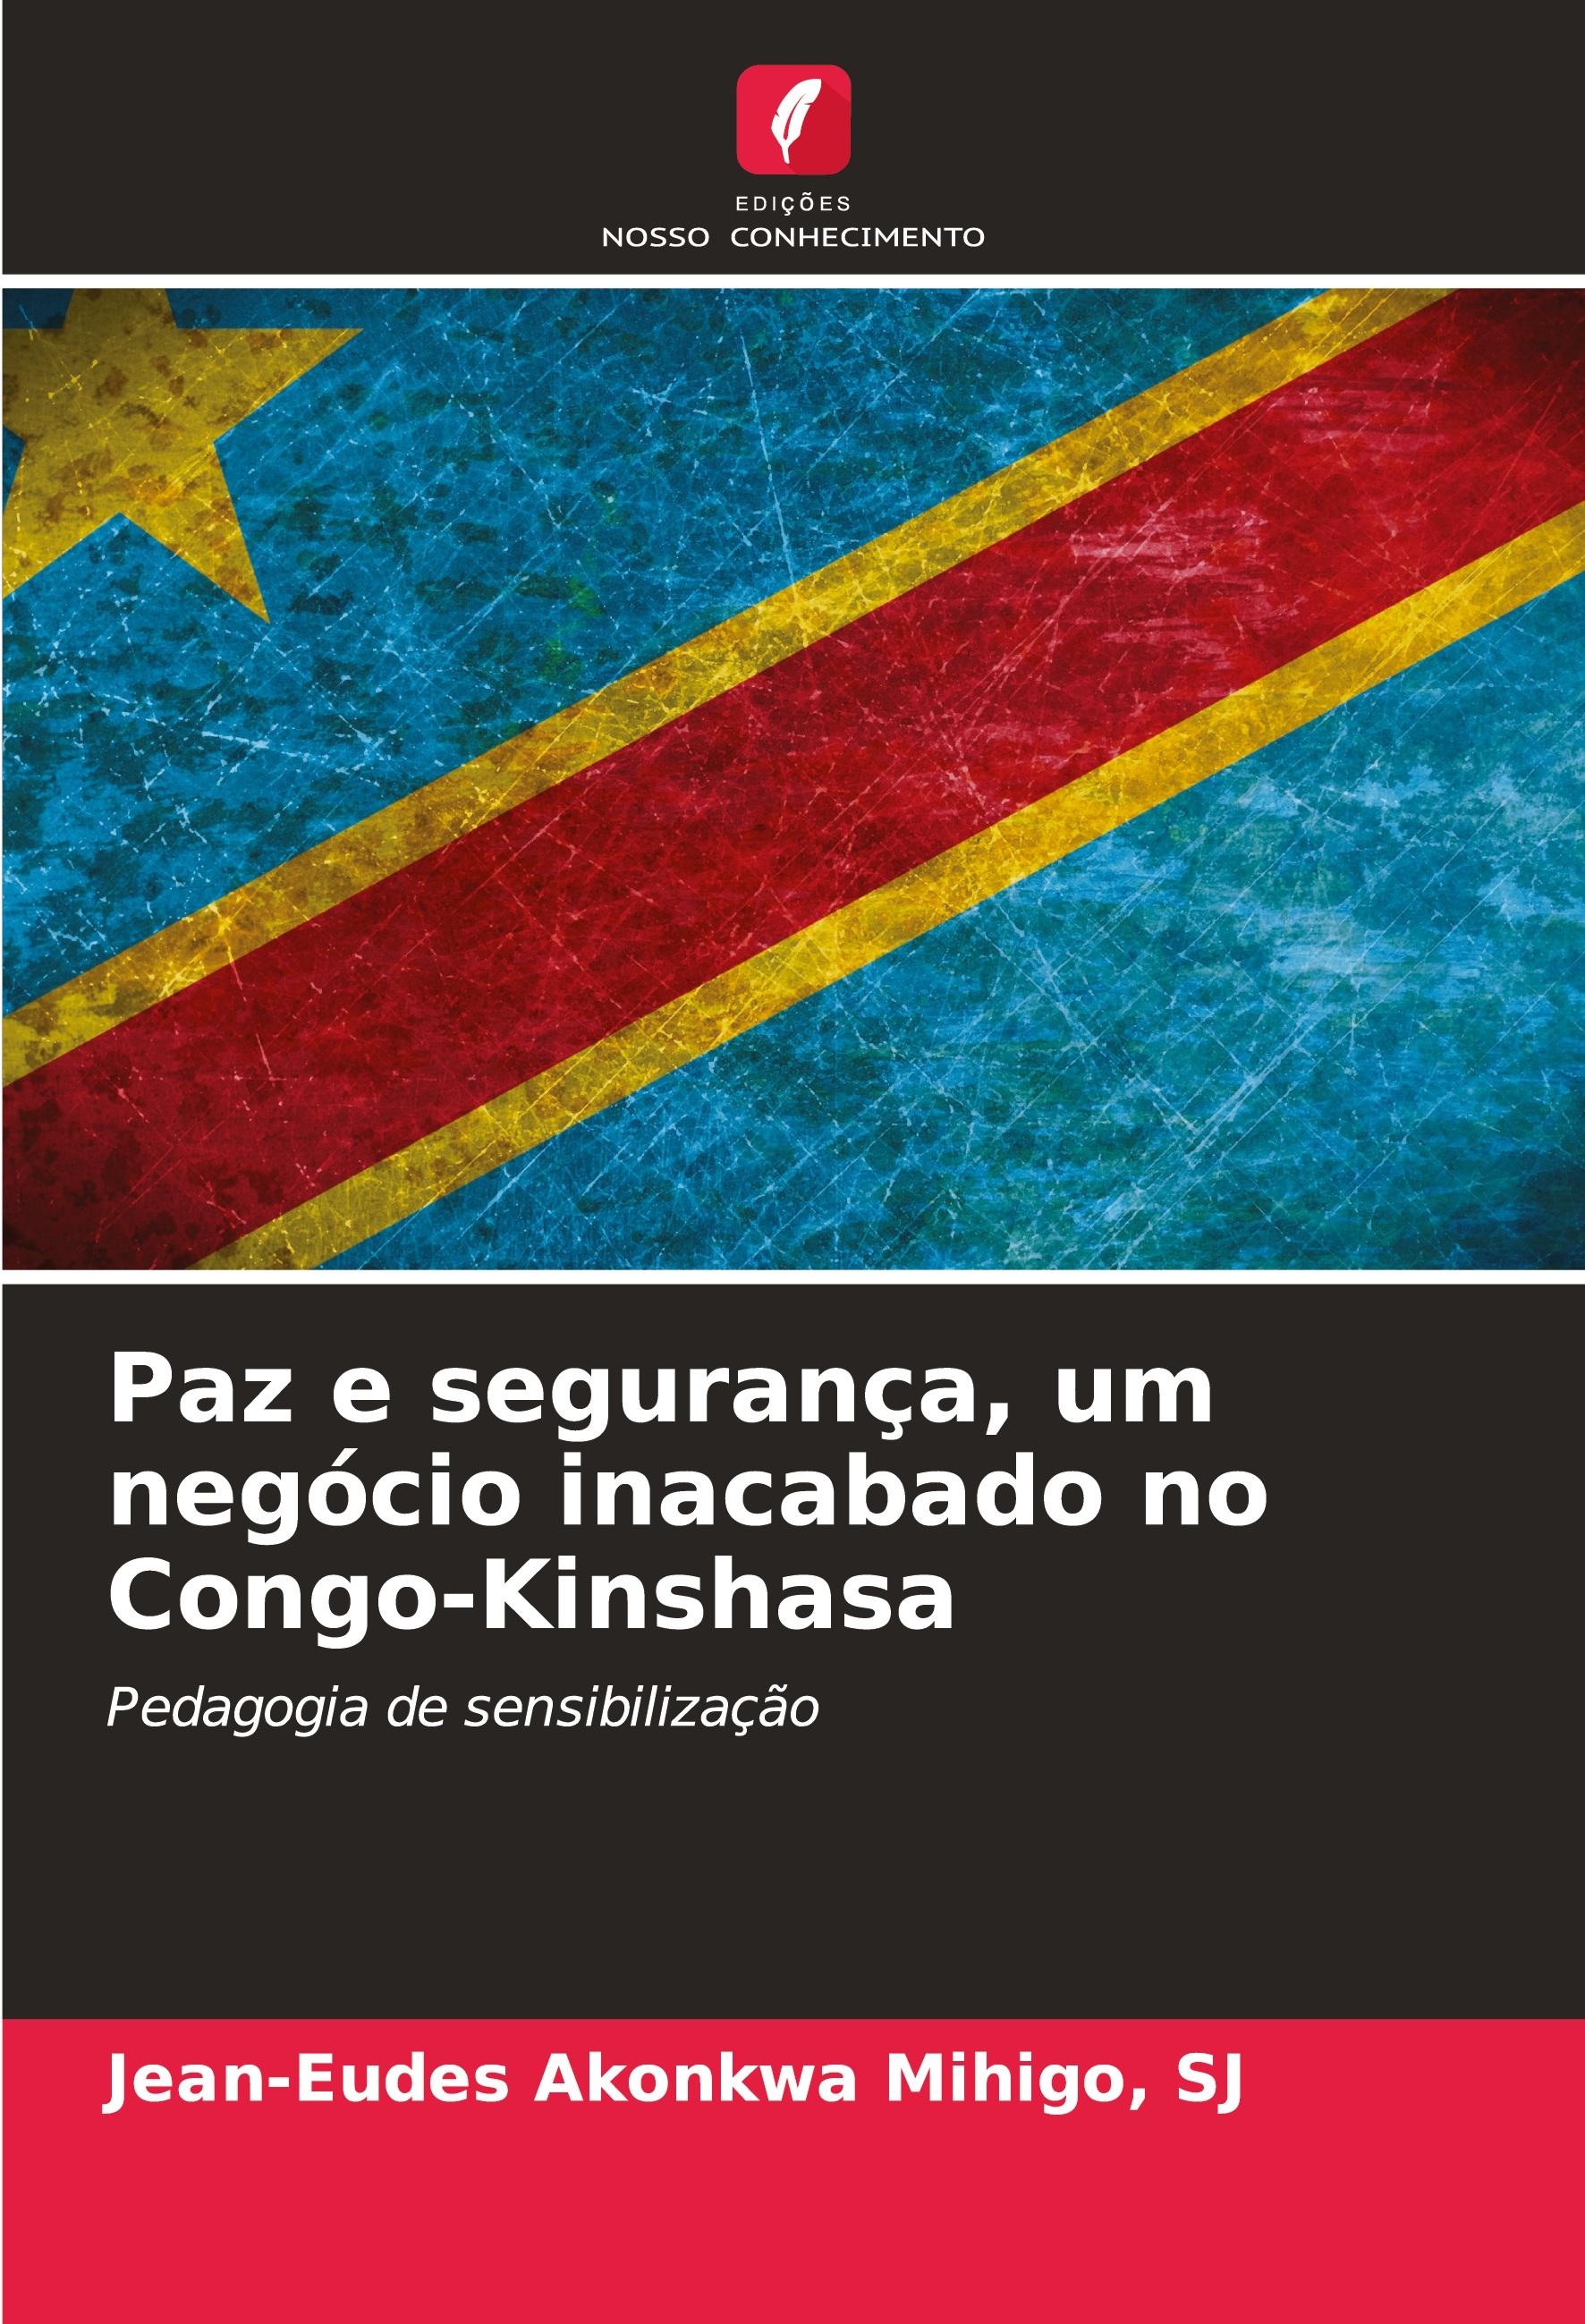 Paz e segurança, um negócio inacabado no Congo-Kinshasa - Akonkwa Mihigo, SJ, Jean-Eudes